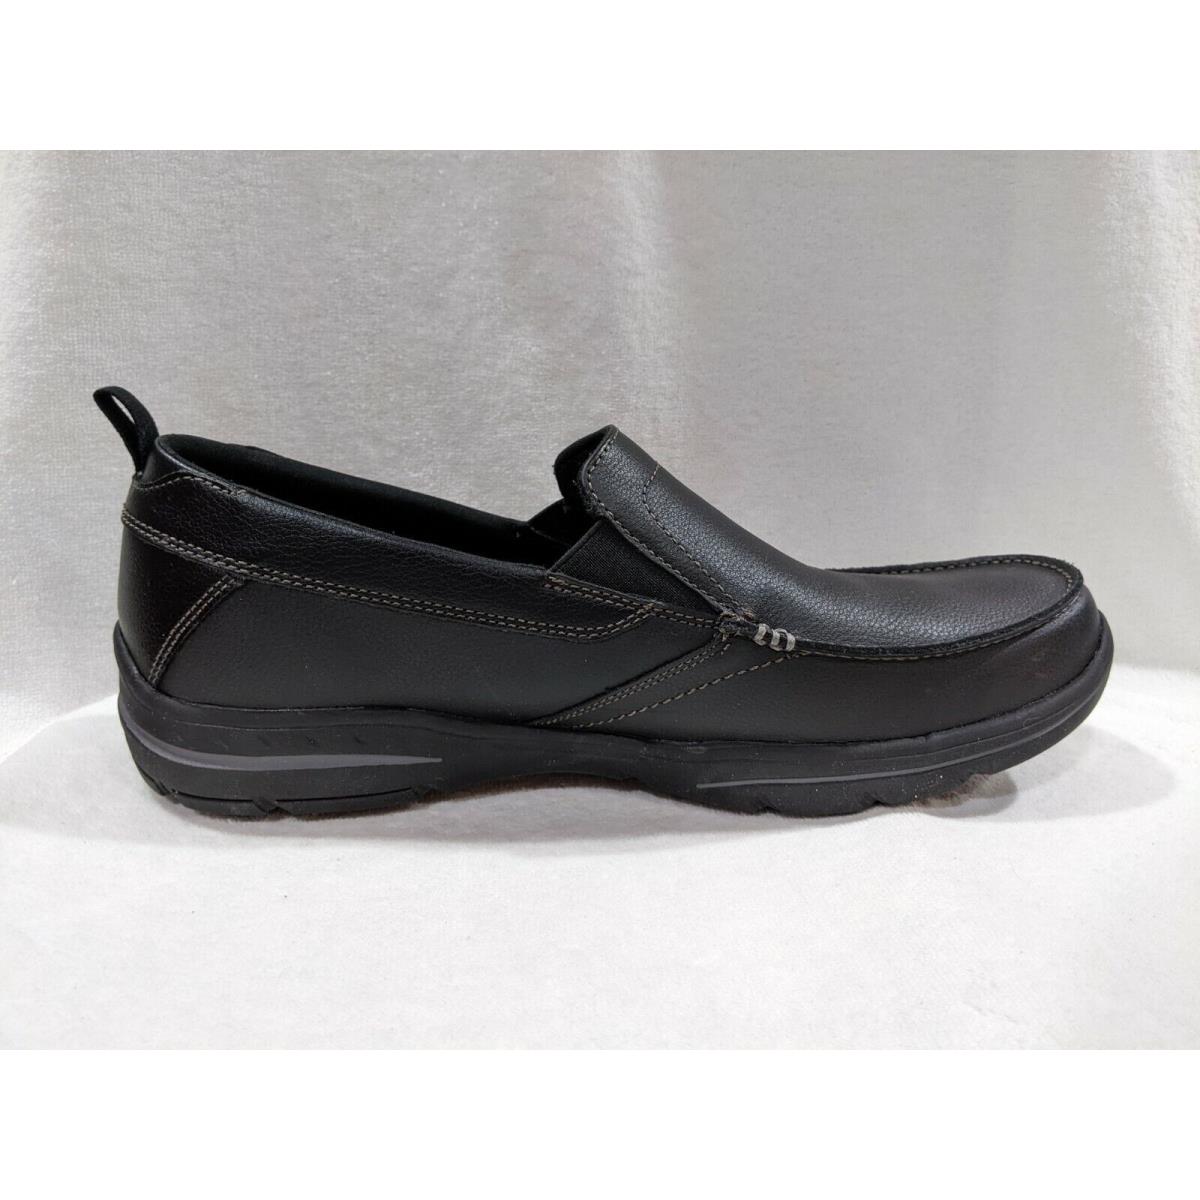 Skechers shoes Harper Forde - Black 5